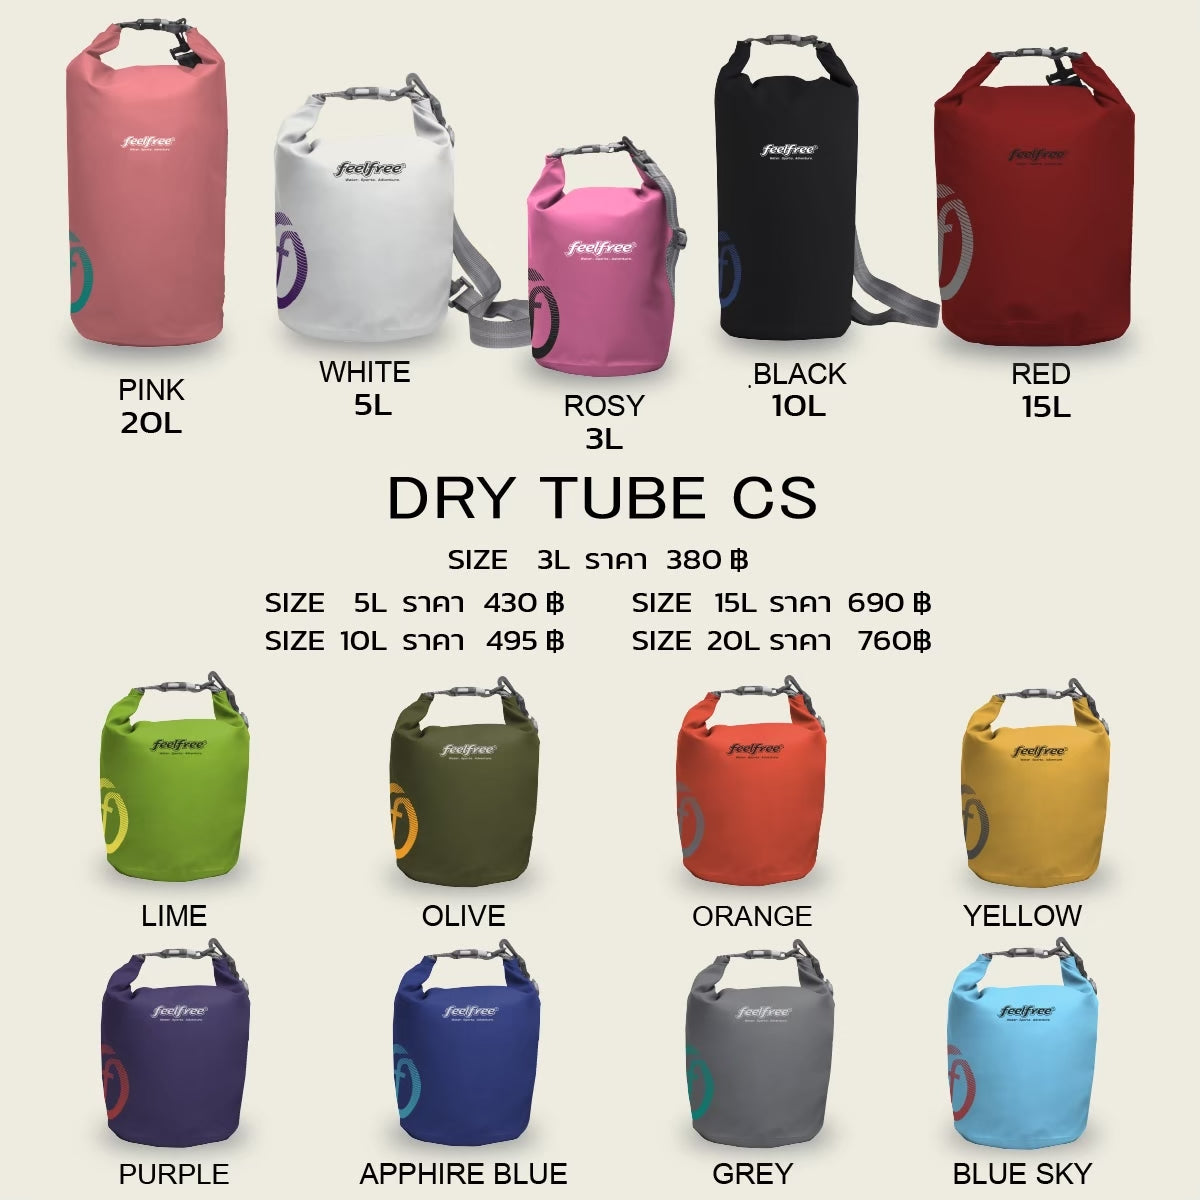 กระเป๋ากันน้ำ ถุงกันน้ำ พรีเมี่ยม DRY TUBE CS